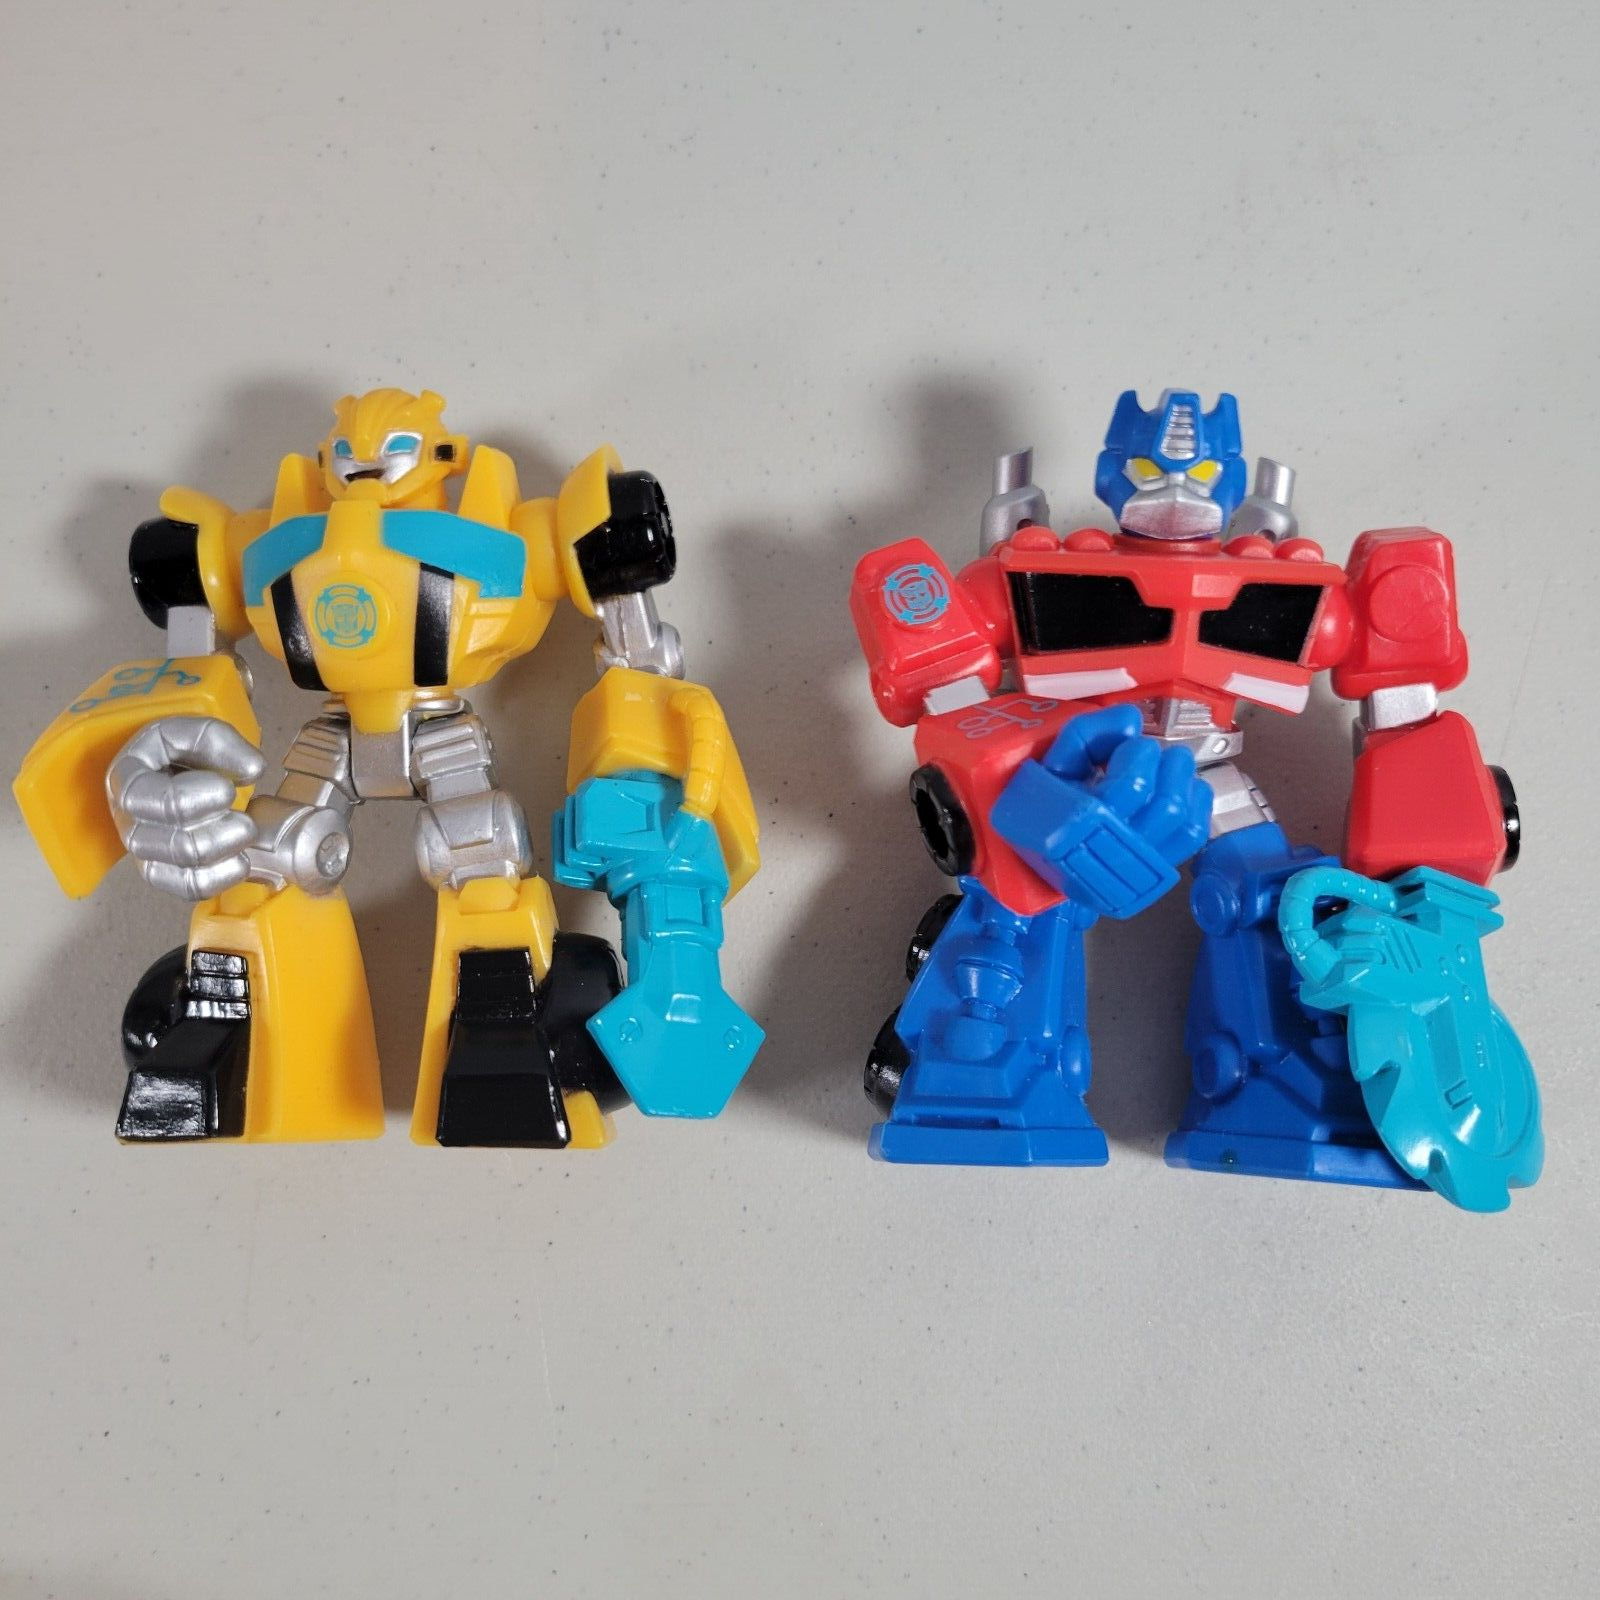 Playskool Heroes Transformers Rescue Bots Bumblebee Optimus Prime Action Figure - $9.89